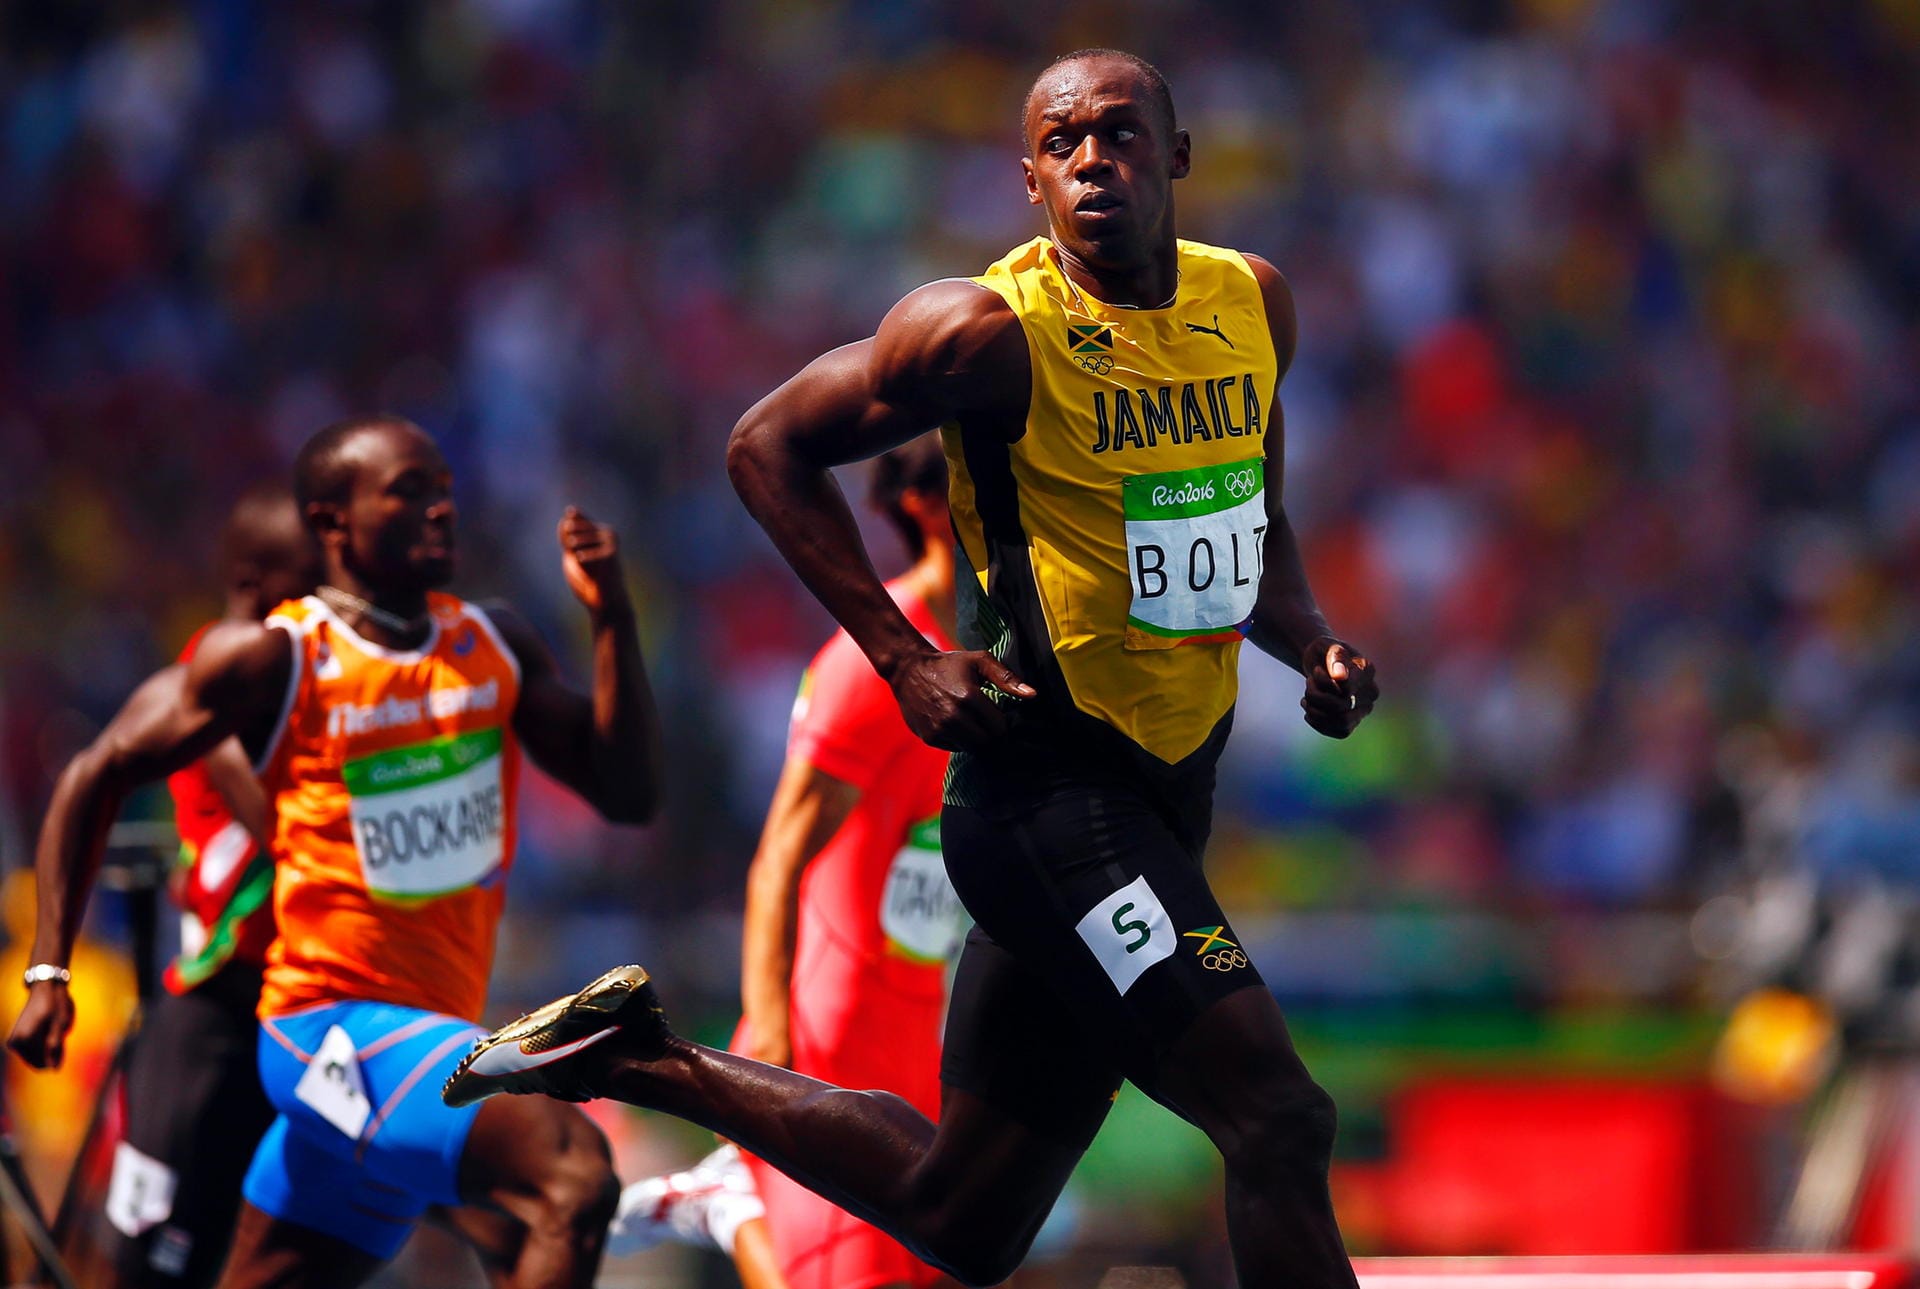 Und Usain Bolt tut weiterhin alles um seinen Legendenstatus auszubauen. Ein Blick nach links und ein Blick nach rechts genügt dem Superstar, um sich des Sieges in seinem 200 Meter Vorlauf sicher zu sein. In 20,28 Sekunden zieht Bolt souverän ins Halbfinale ein und macht damit einem weiteren Schritt in Richtung "Triple-Triple" (dreimal Gold bei drei Olympischen Spielen).